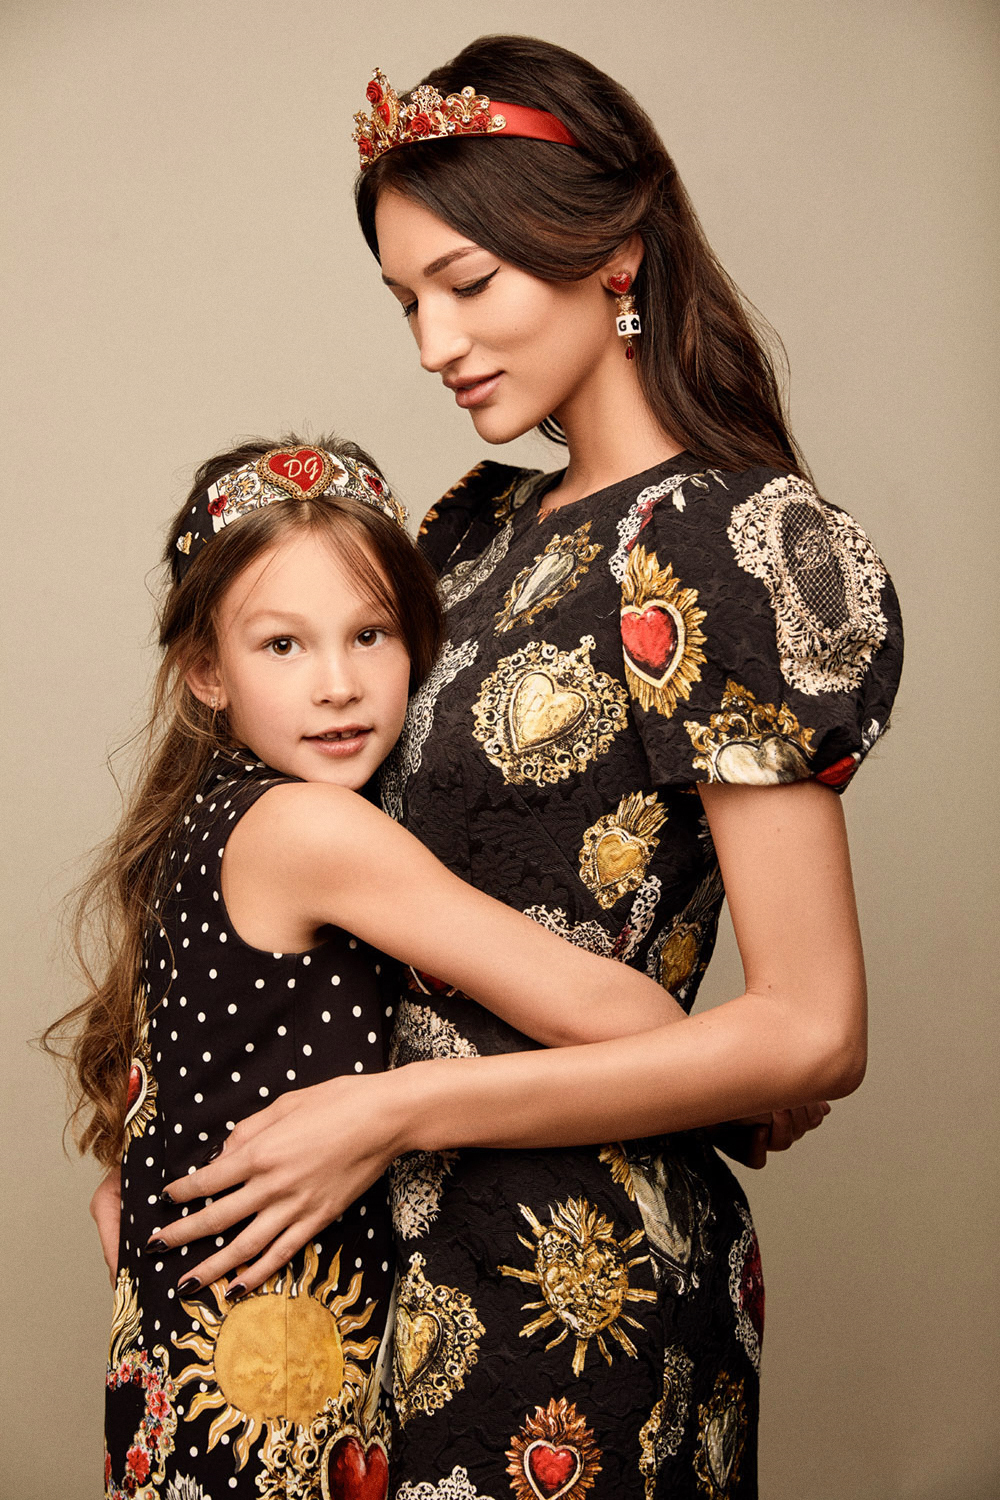 Семейные правила стиля в спецпроекте Dolce & Gabbana ко Дню матери.